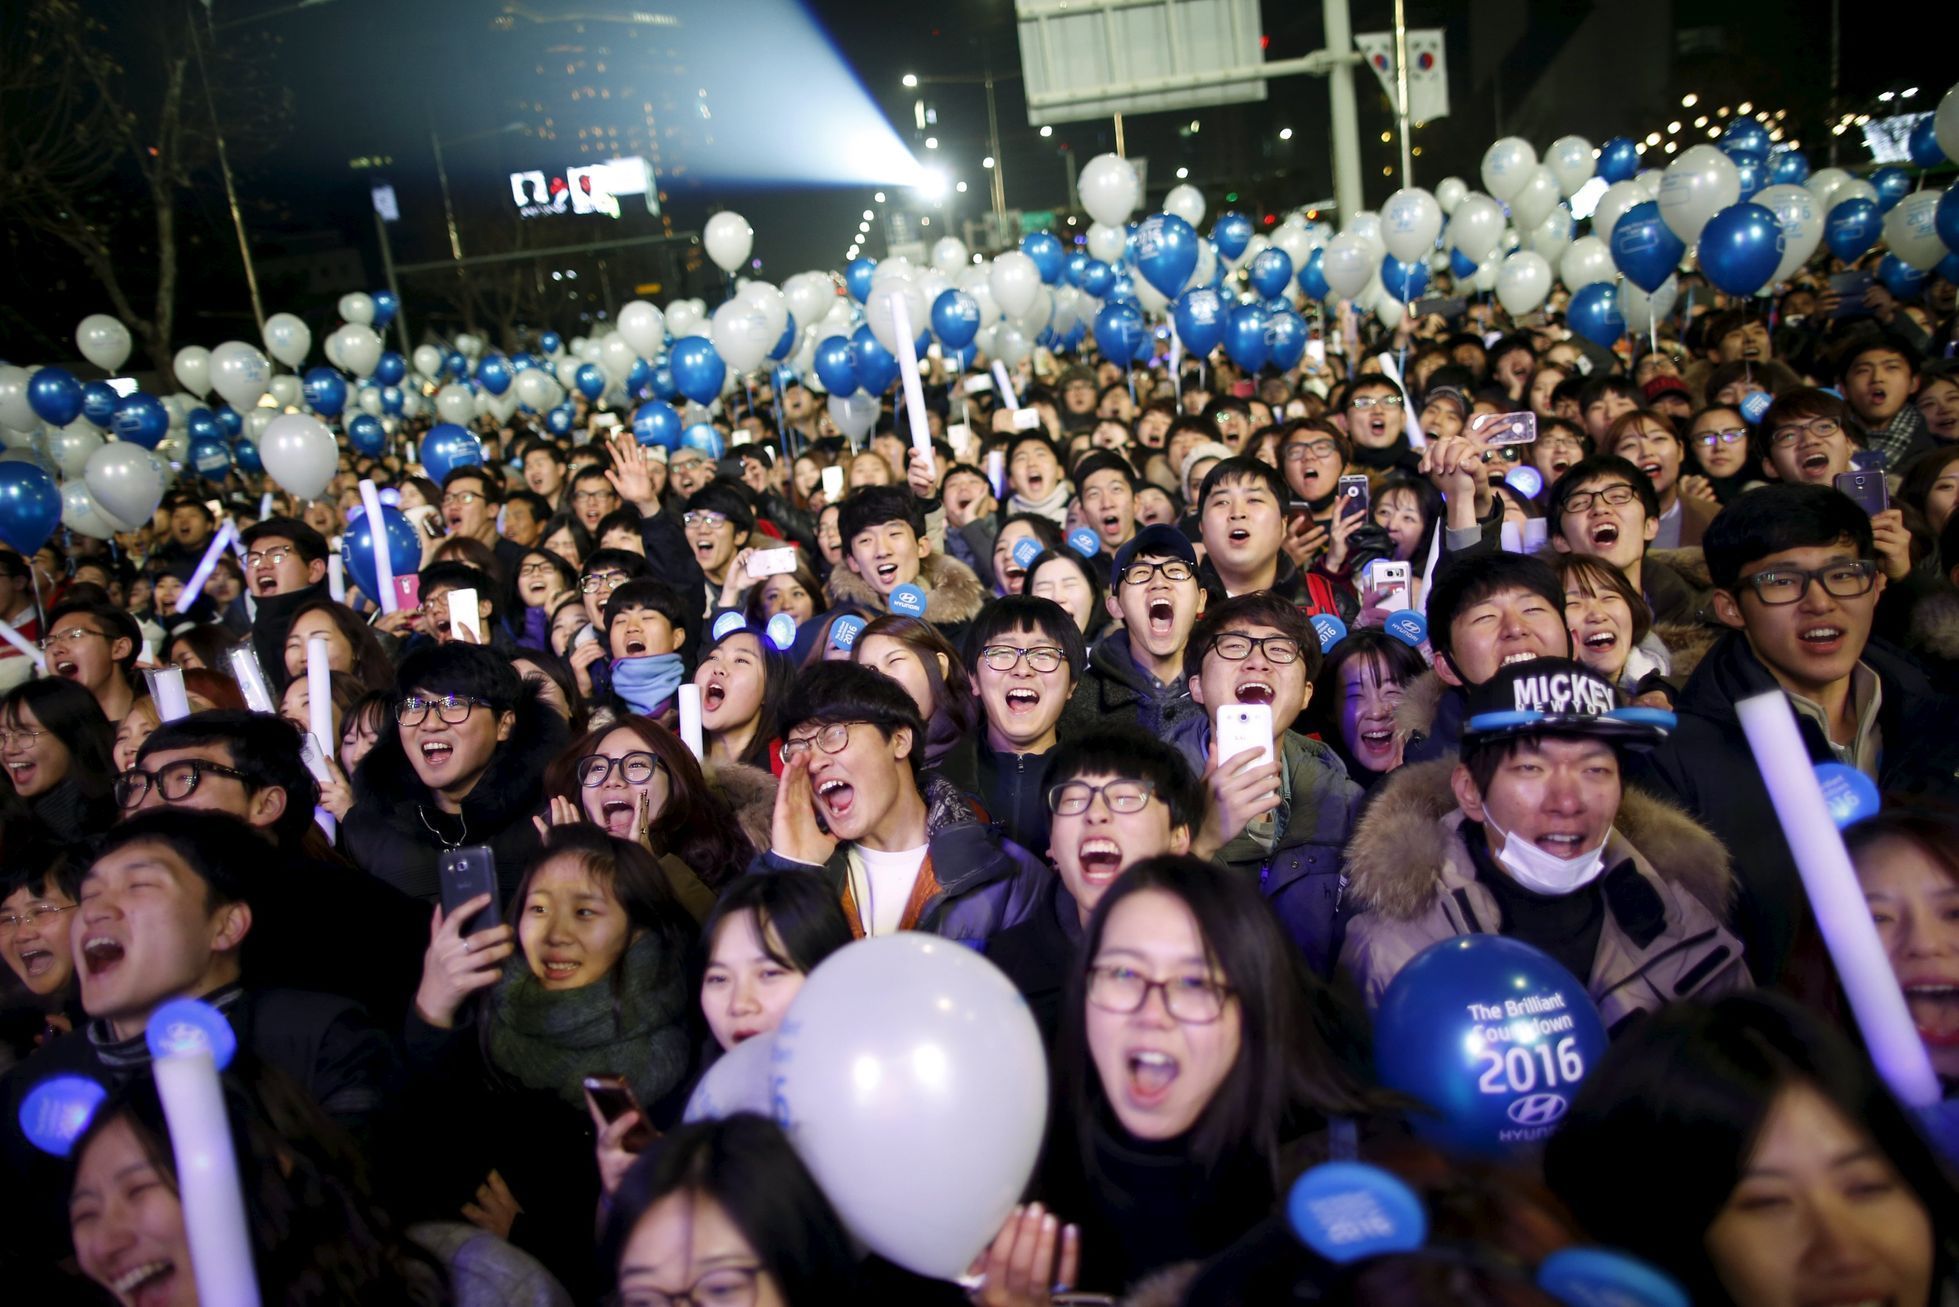 Odpočítávání posledních vteřin roku 2015 v jihokorejském Soulu.